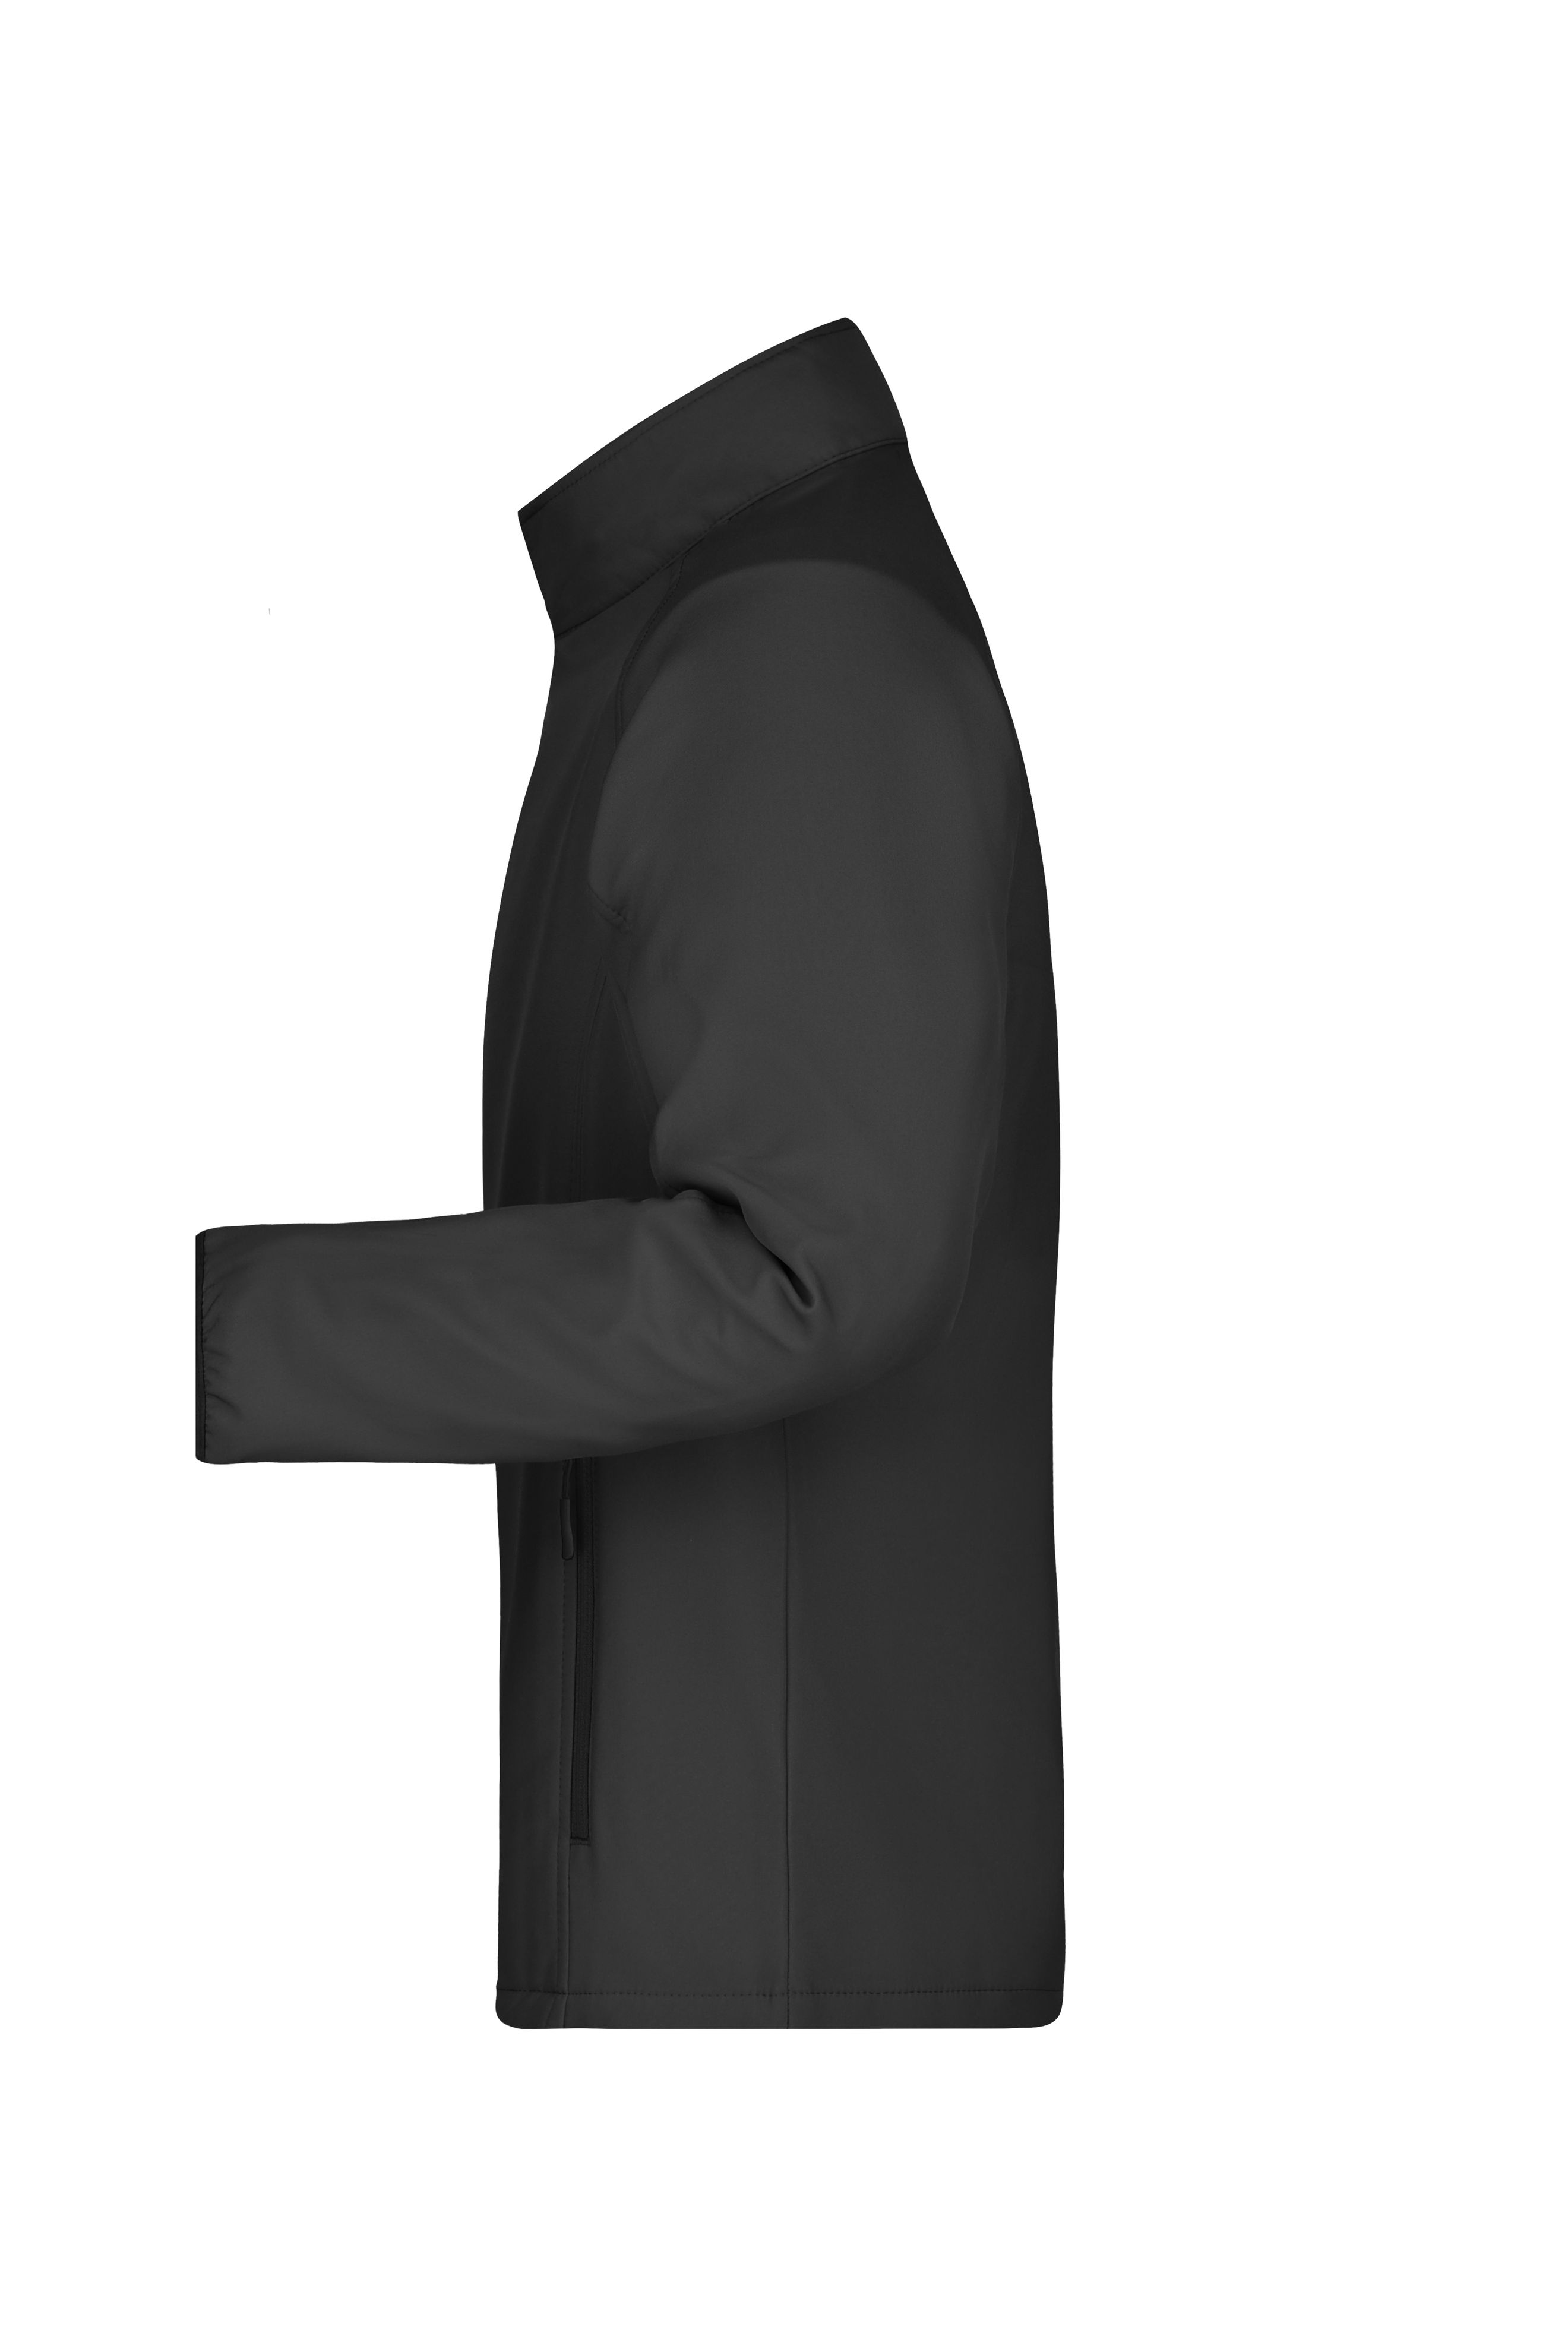 Men's Promo Softshell Jacket JN1130 Softshelljacke für Promotion und Freizeit